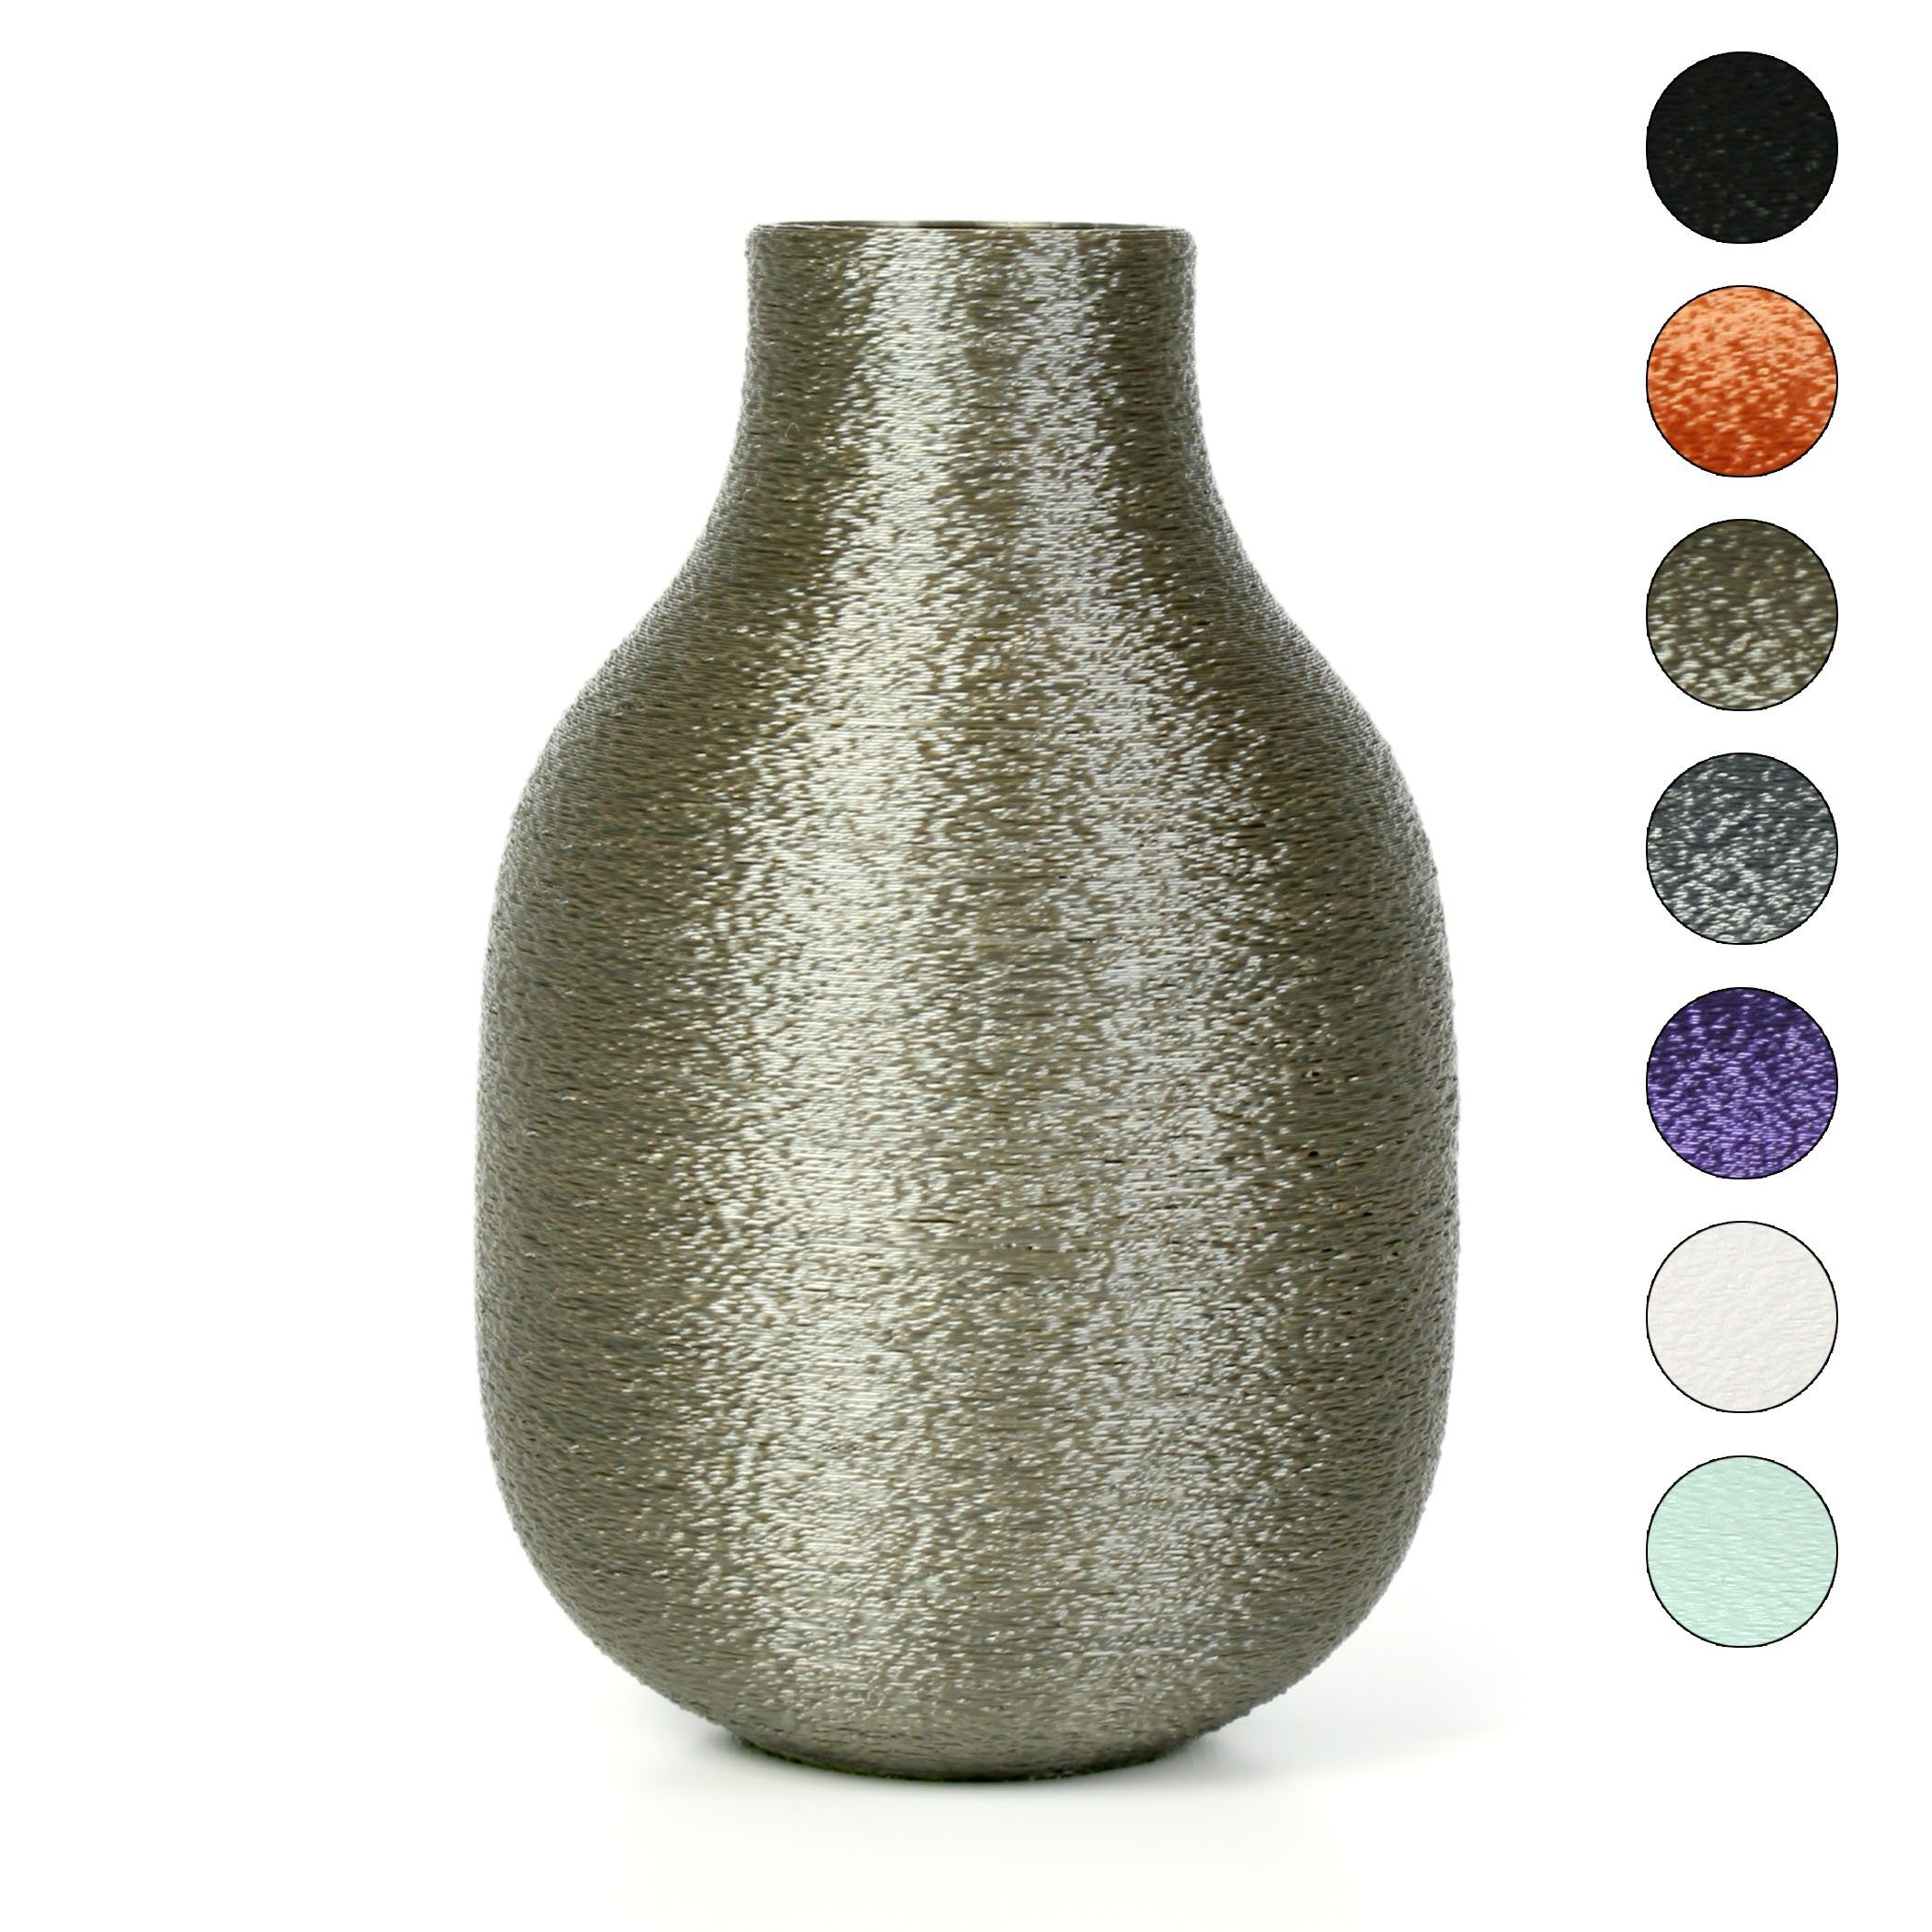 Kreative Feder Dekovase Designer Vase – Dekorative Blumenvase aus Bio-Kunststoff, aus nachwachsenden Rohstoffen; wasserdicht & bruchsicher Old Copper